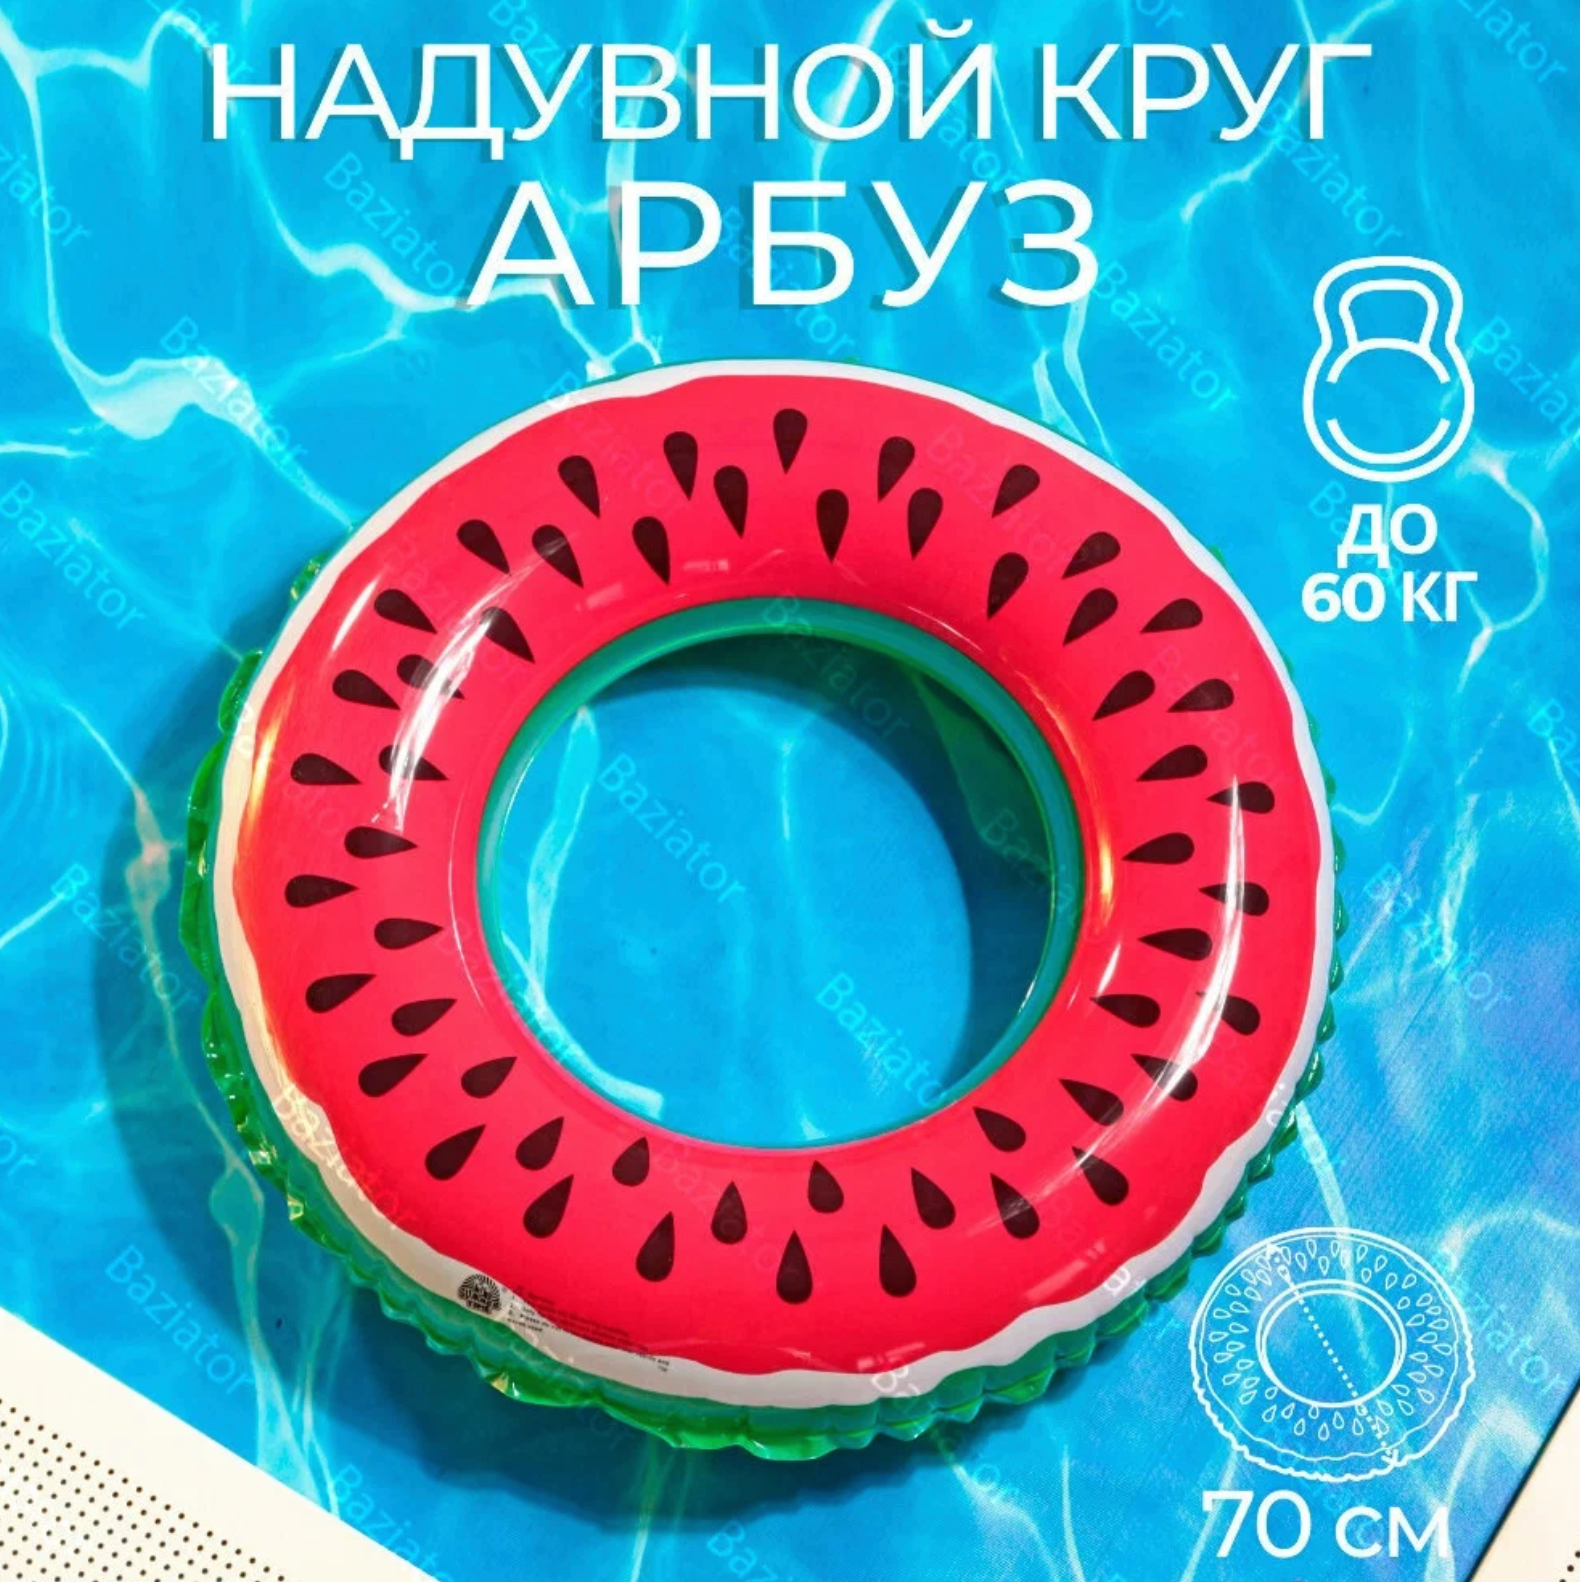 Надувной круг для плавания детский Арбуз диаметр 90 см надувной круг для детей; плавательный круг в виде (форме) Арбуза; спасательный круг для малышей